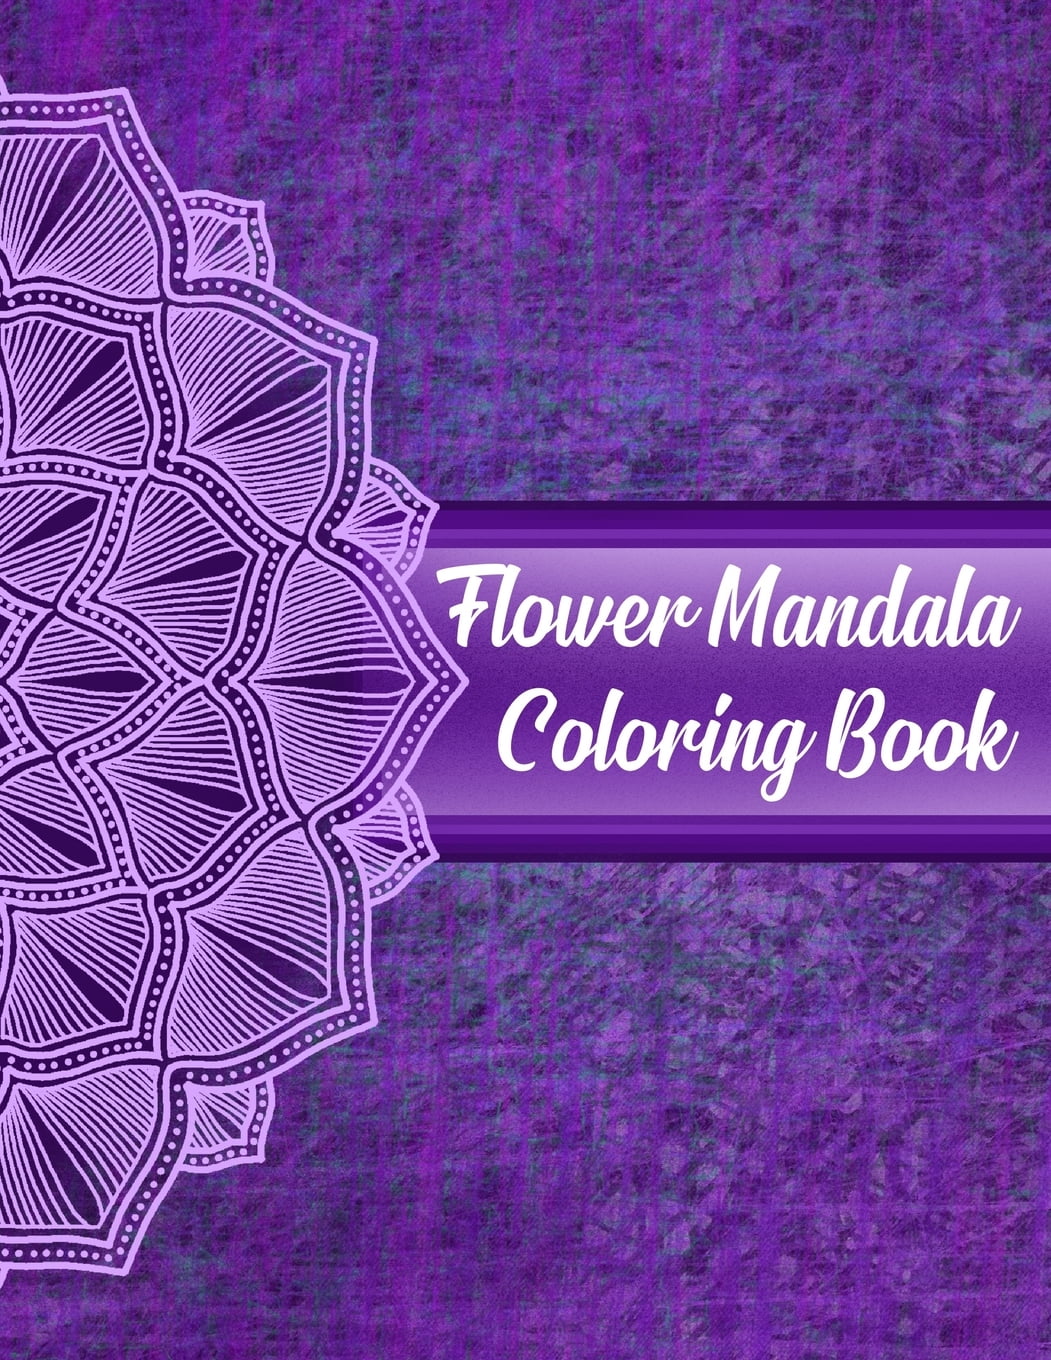 Flower Mandala Coloring Book: Mandala Coloring Books For ...